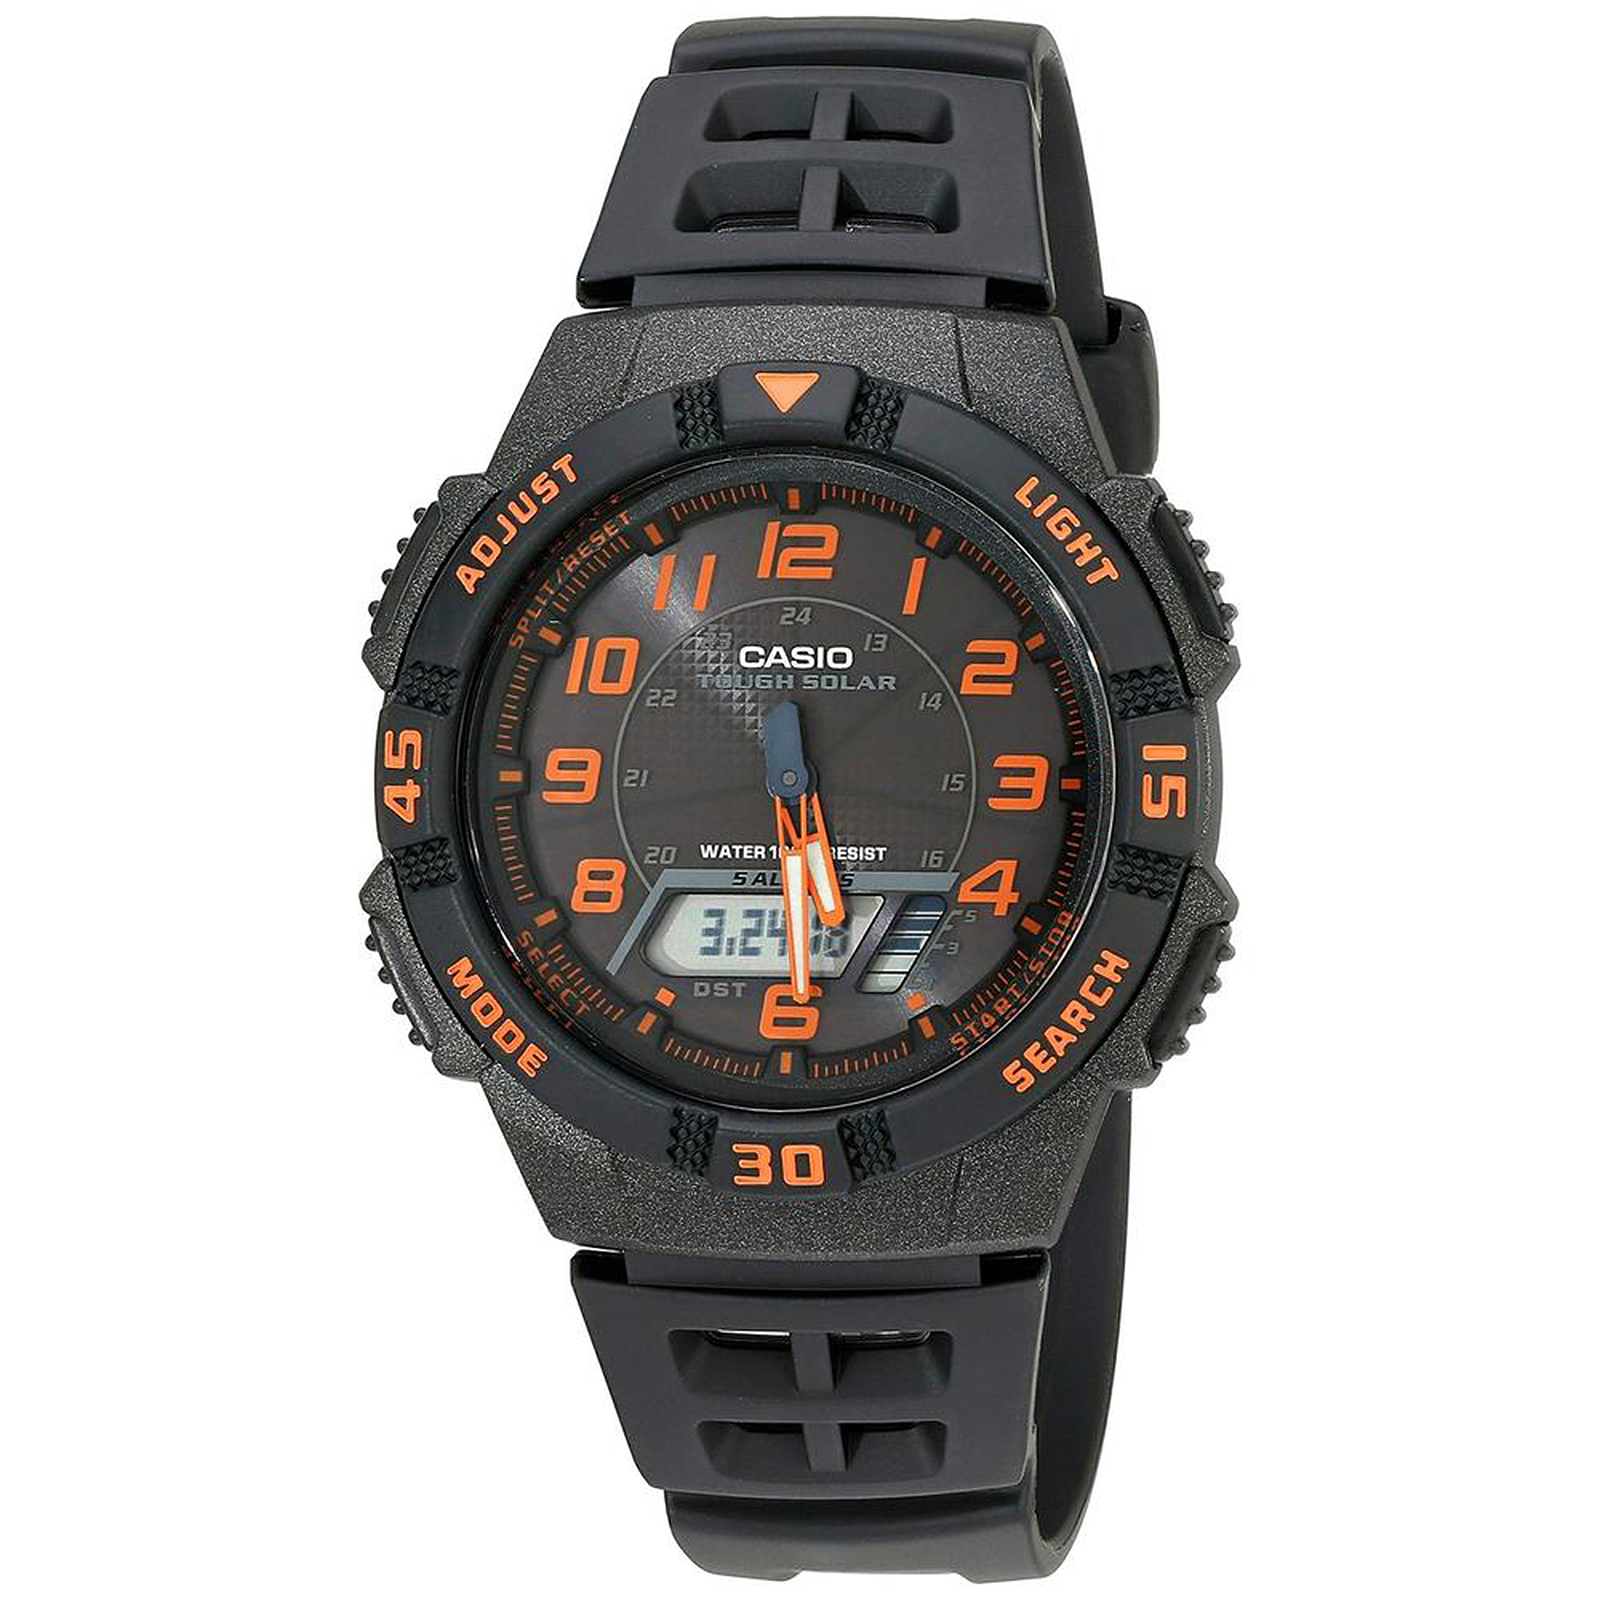 Casio AQS800W-1B2 Men’s Sports Resin Solar Analog Digital Watch - Black